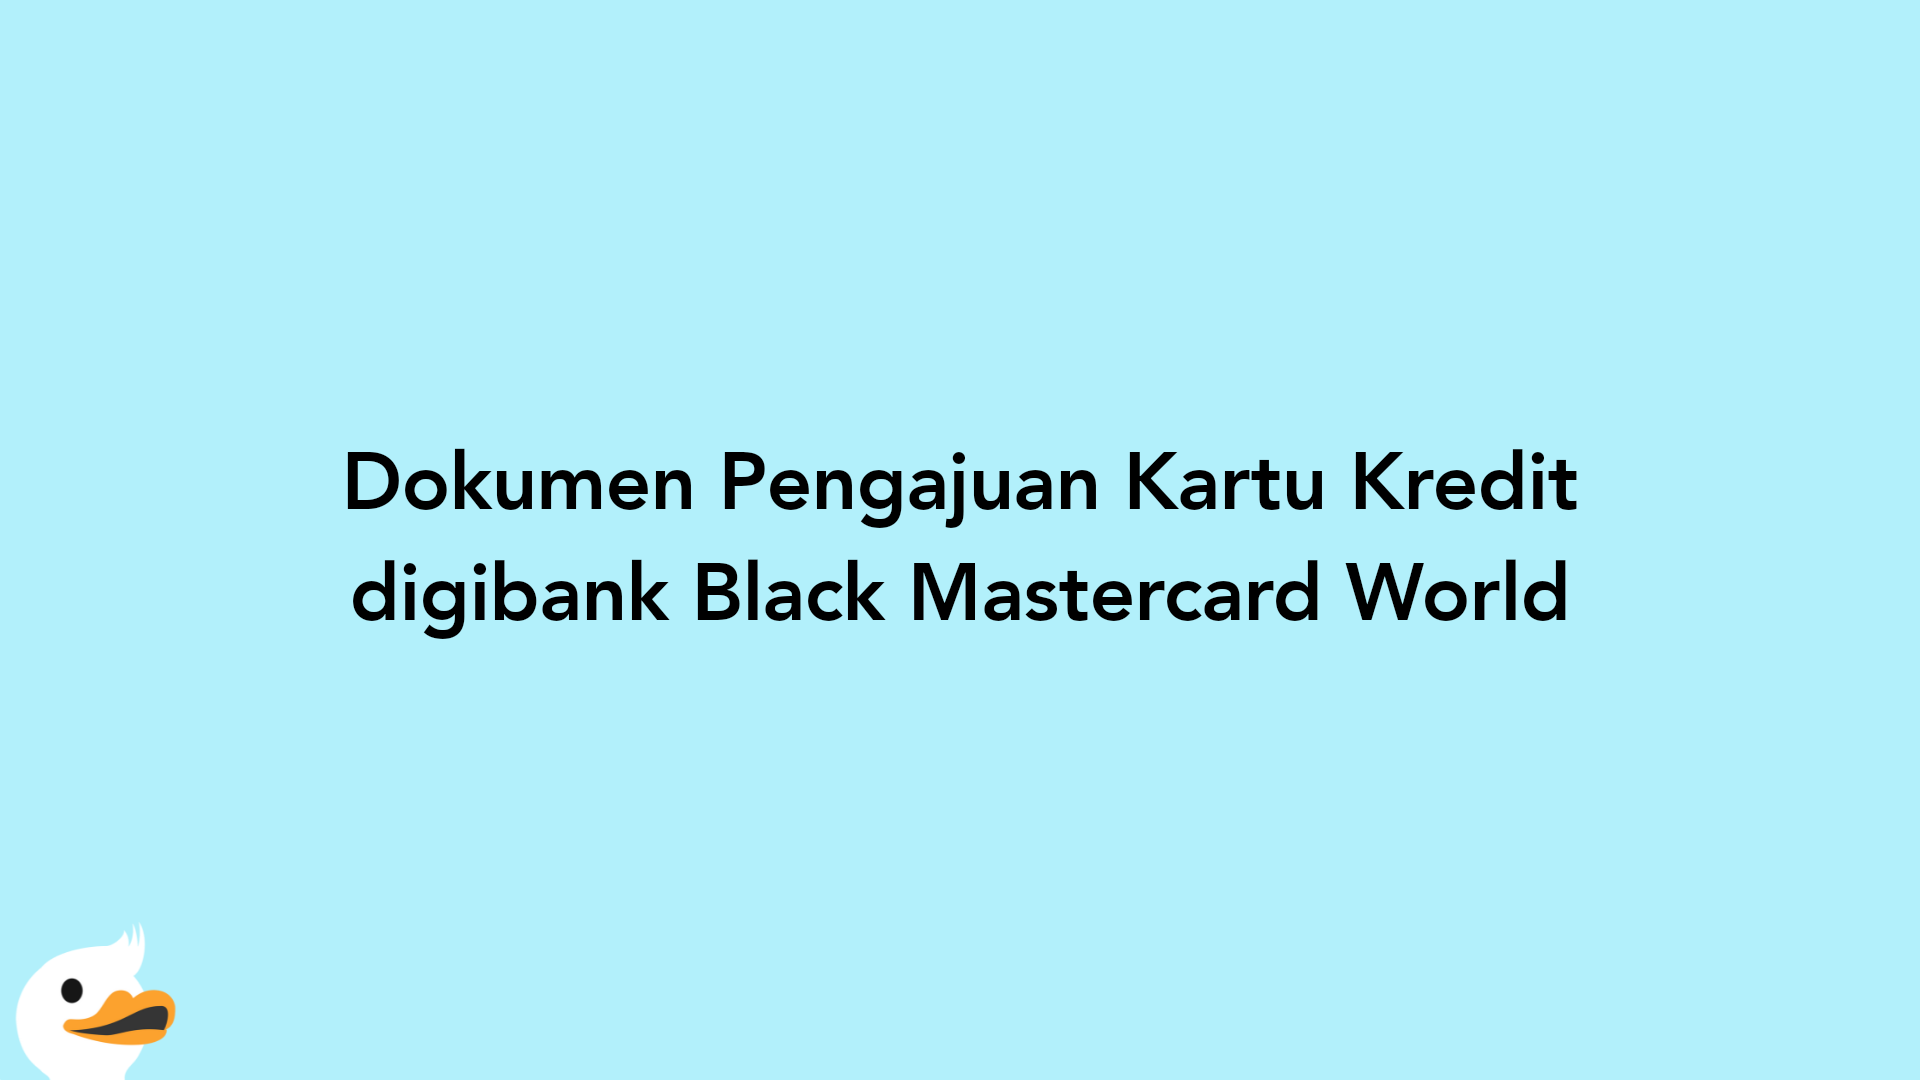 Dokumen Pengajuan Kartu Kredit digibank Black Mastercard World